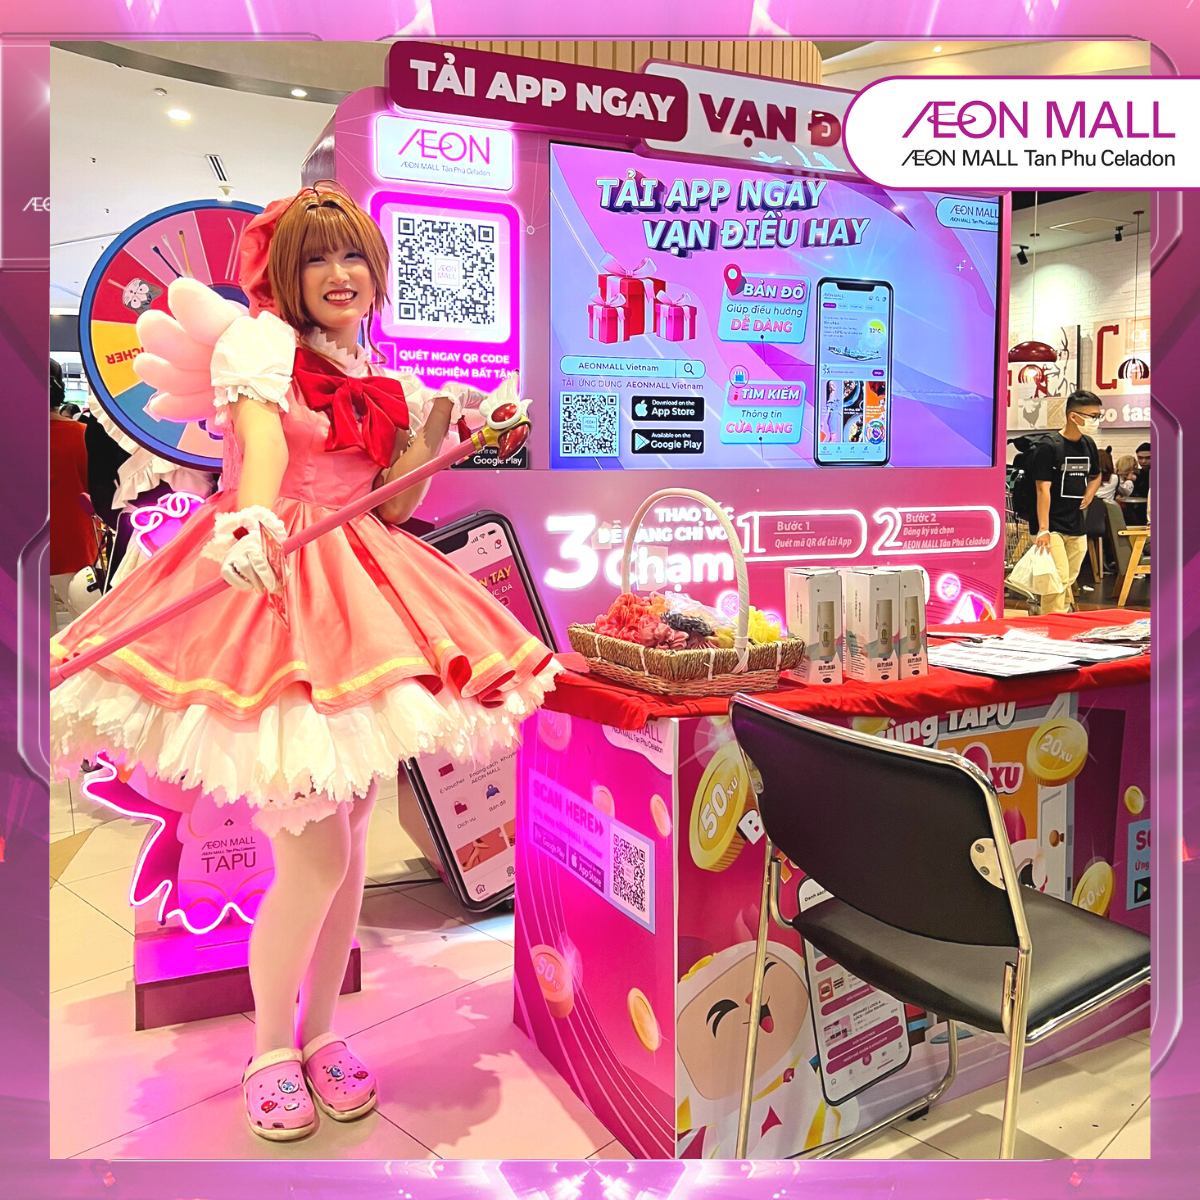 Đến AEON Mall Tân Phú và tham gia sự kiện cosplay để trải nghiệm những bộ trang phục đầy sáng tạo. Hãy cùng khám phá nơi đây, nơi mà những fan hâm mộ có thể cùng nhau tạo nên các bức ảnh đẹp và kỷ niệm tuyệt vời.